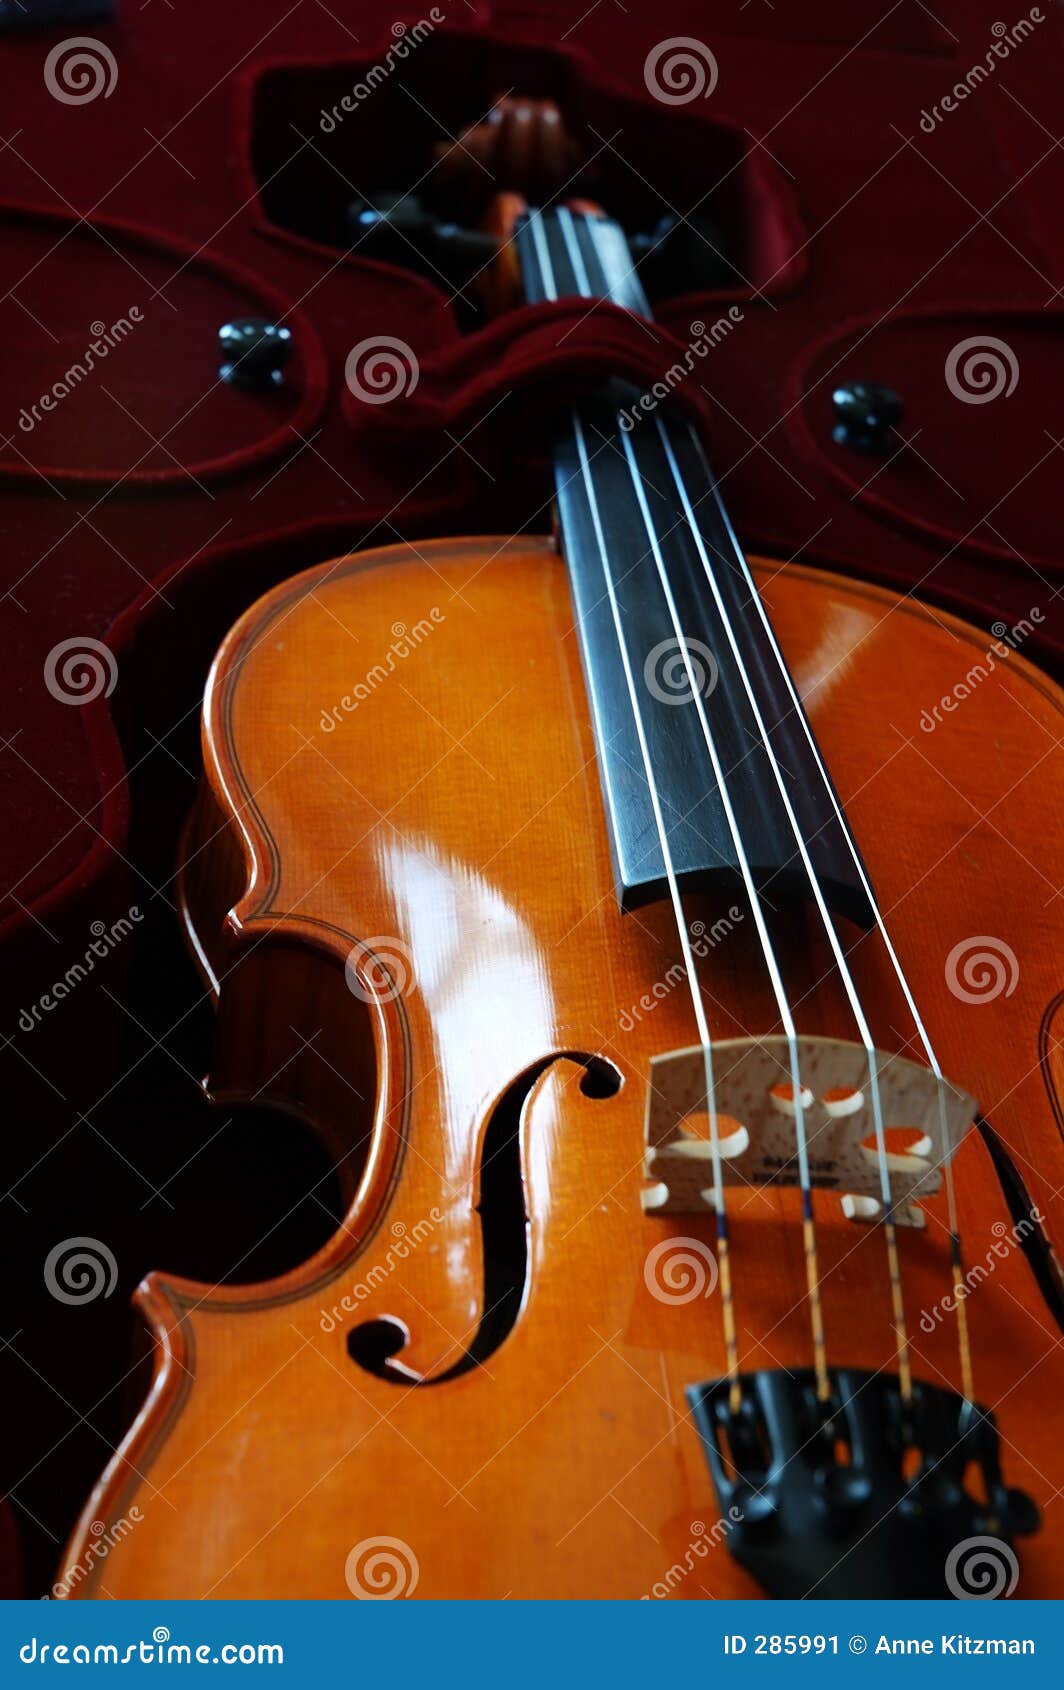 Violine in einem dunkelroten Samtkasten.